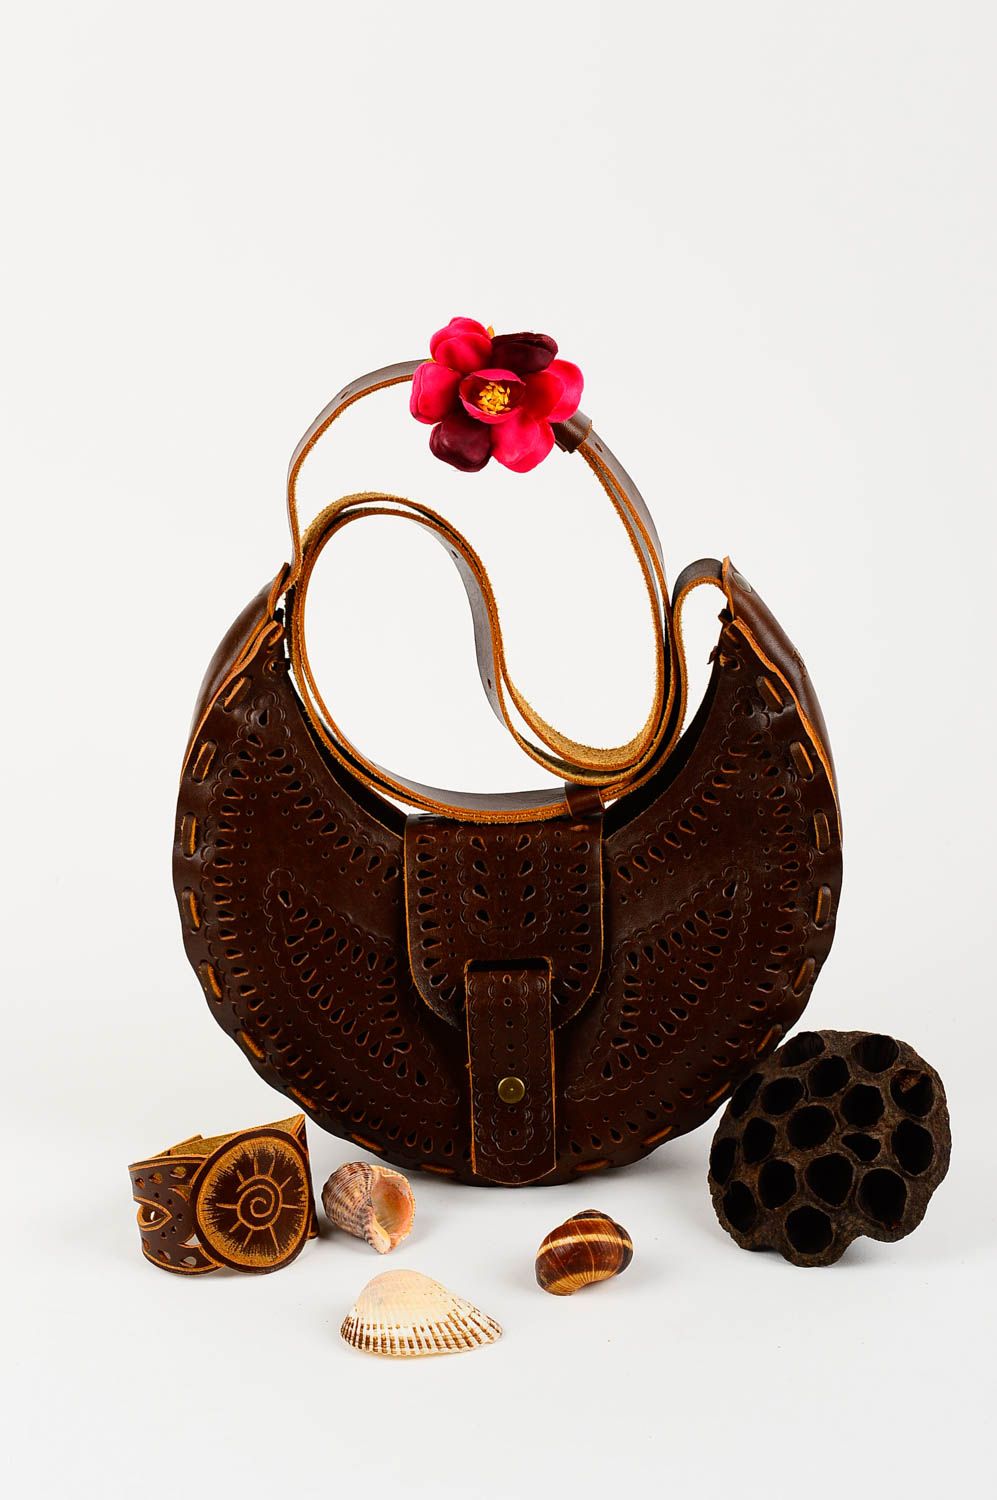 Сумка на плечо сумка ручной работы красивая стильная авторская кожаная сумка фото 1